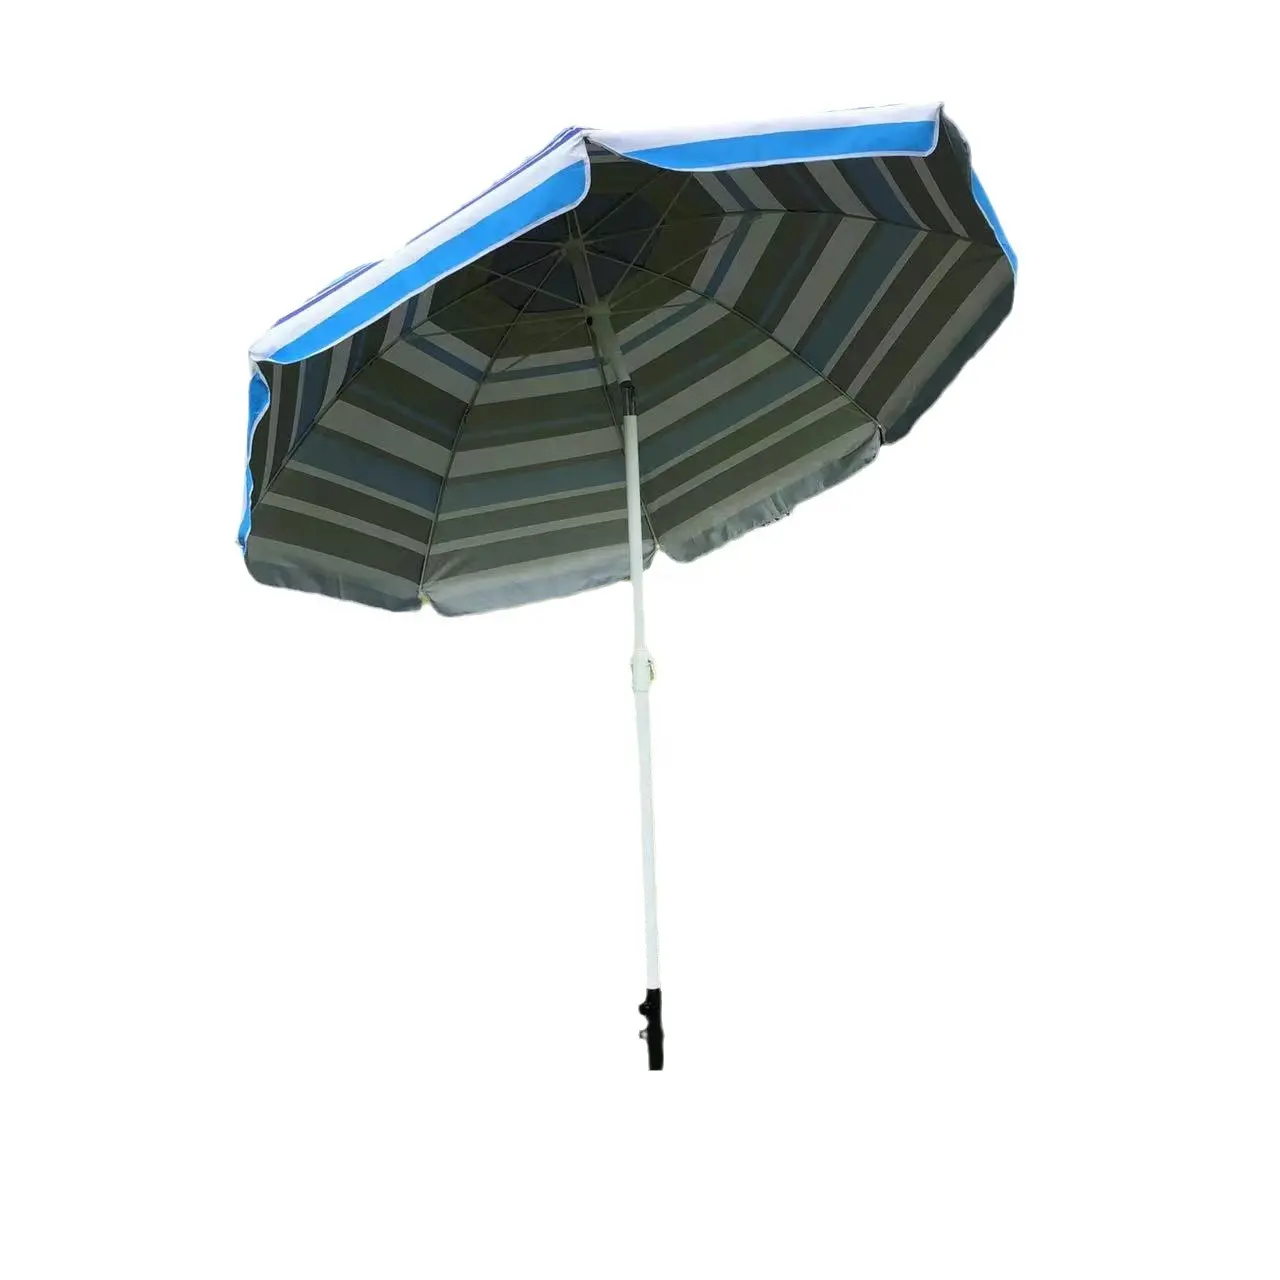 2M payung pantai iklan pantai payung matahari dengan tas penyimpanan meja Promosi 8ft kain Oxford